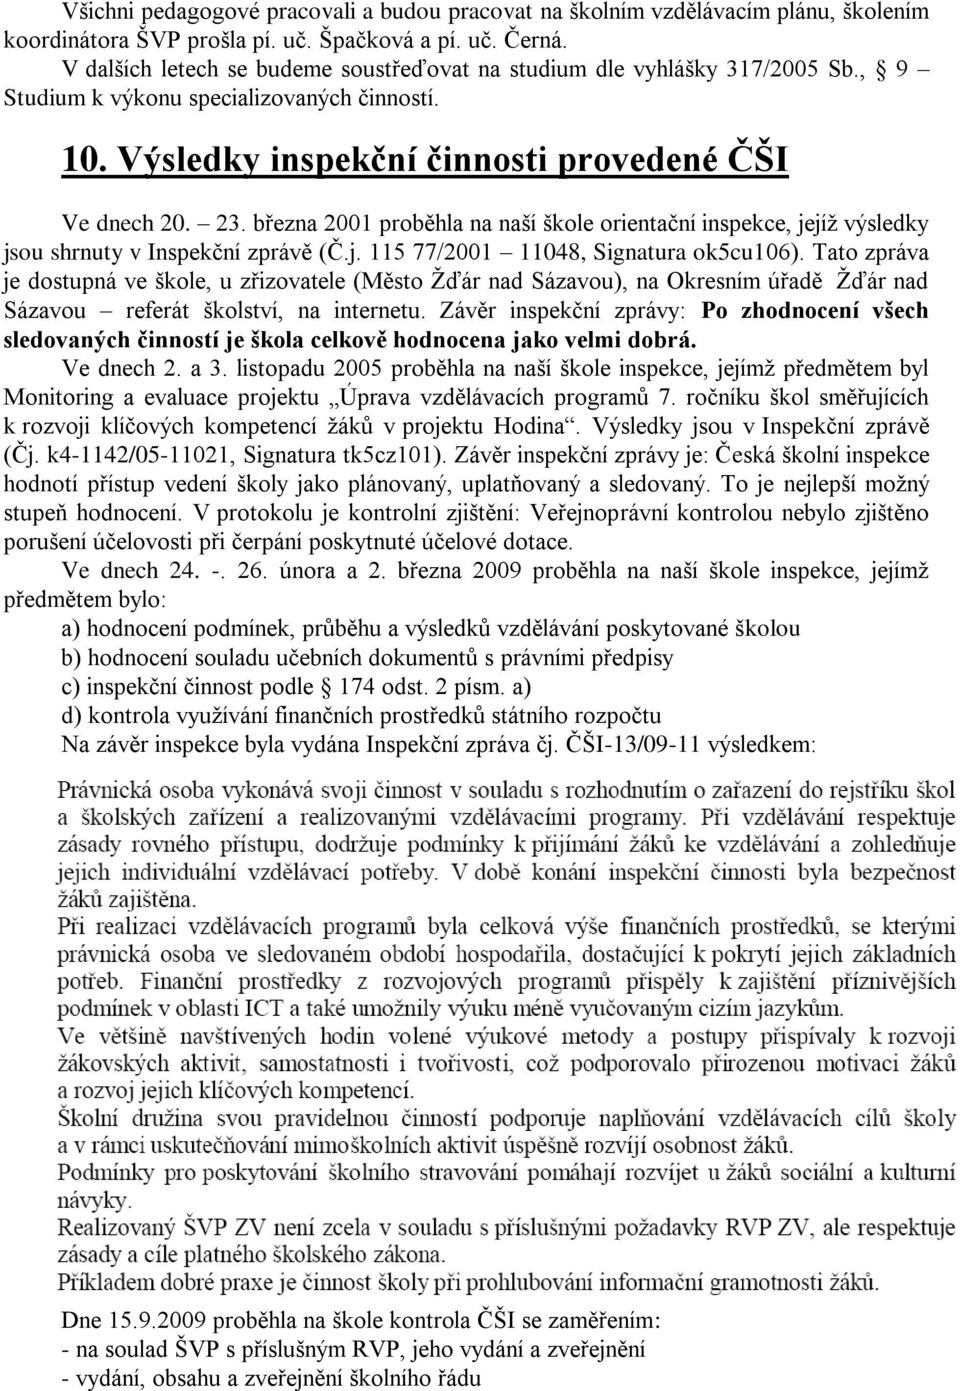 března 2001 proběhla na naší škole orientační inspekce, jejíţ výsledky jsou shrnuty v Inspekční zprávě (Č.j. 115 77/2001 11048, Signatura ok5cu106).